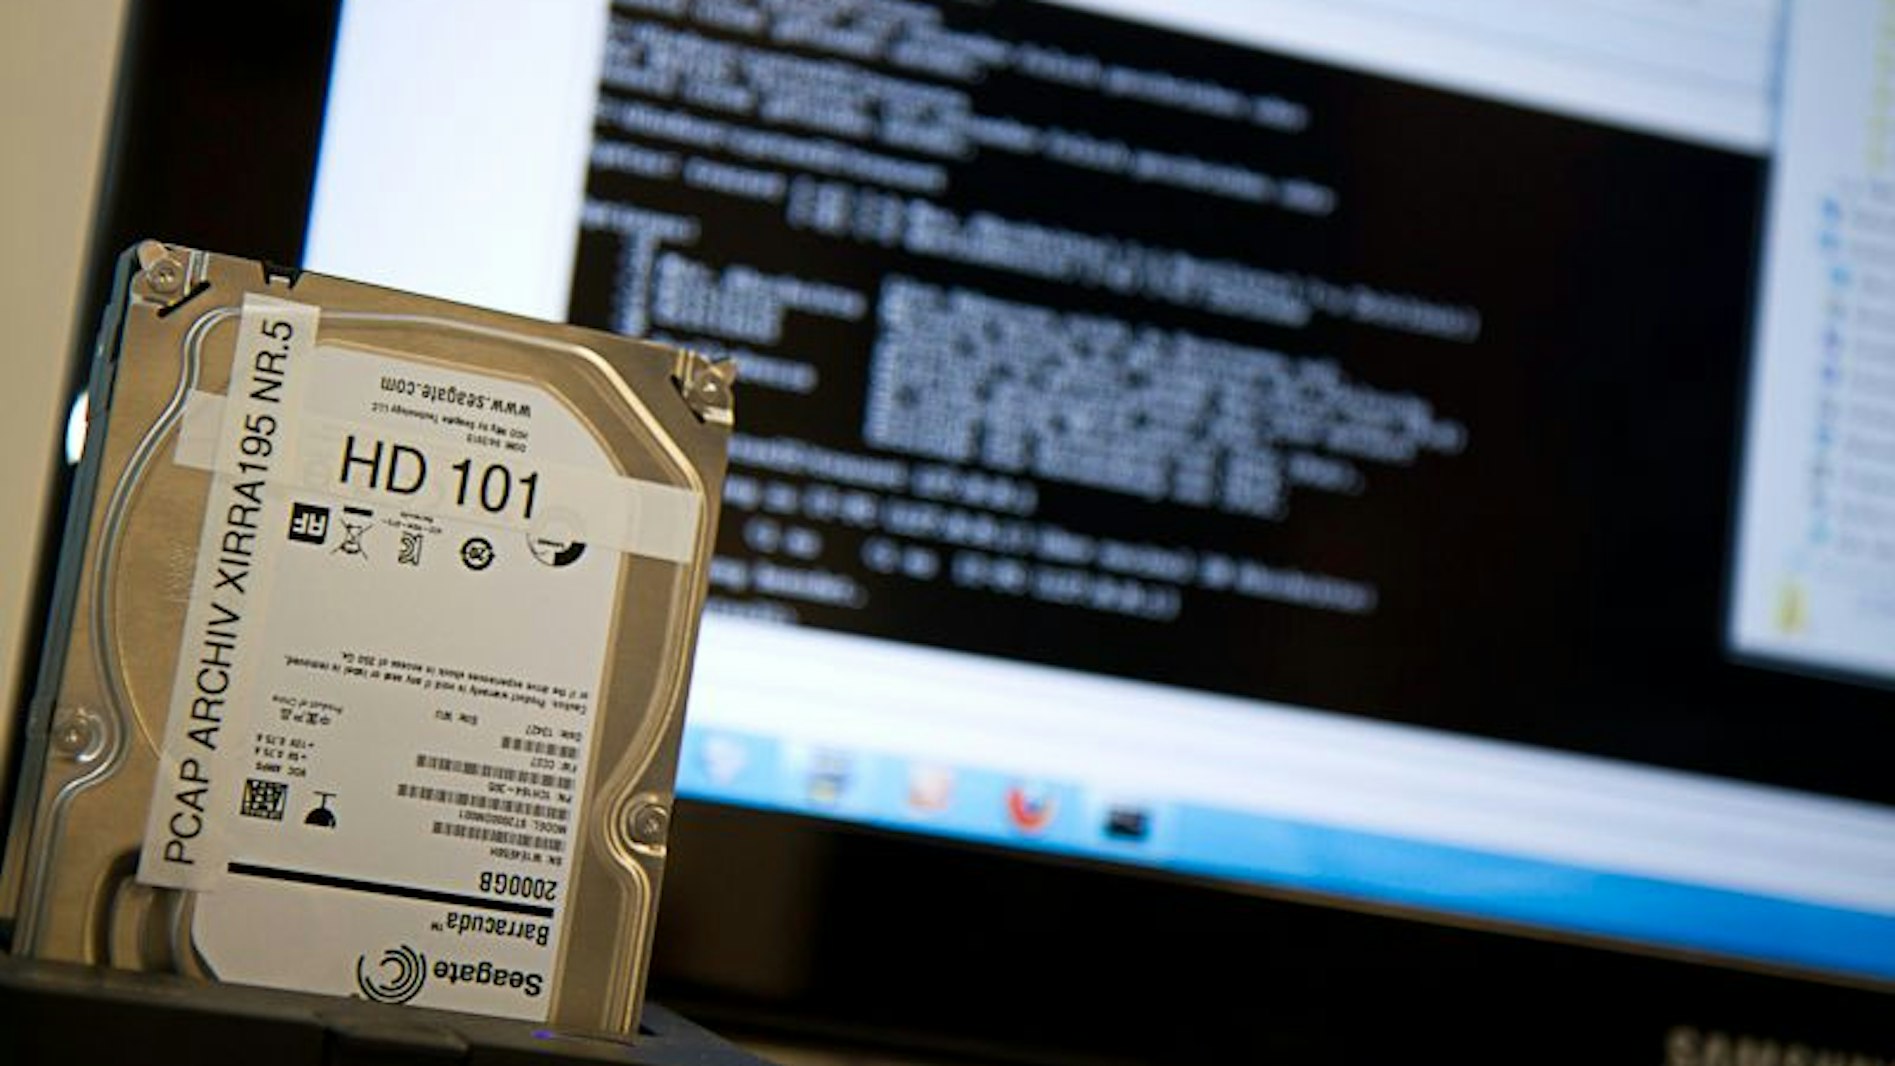 Festplatte vor einem Monitor